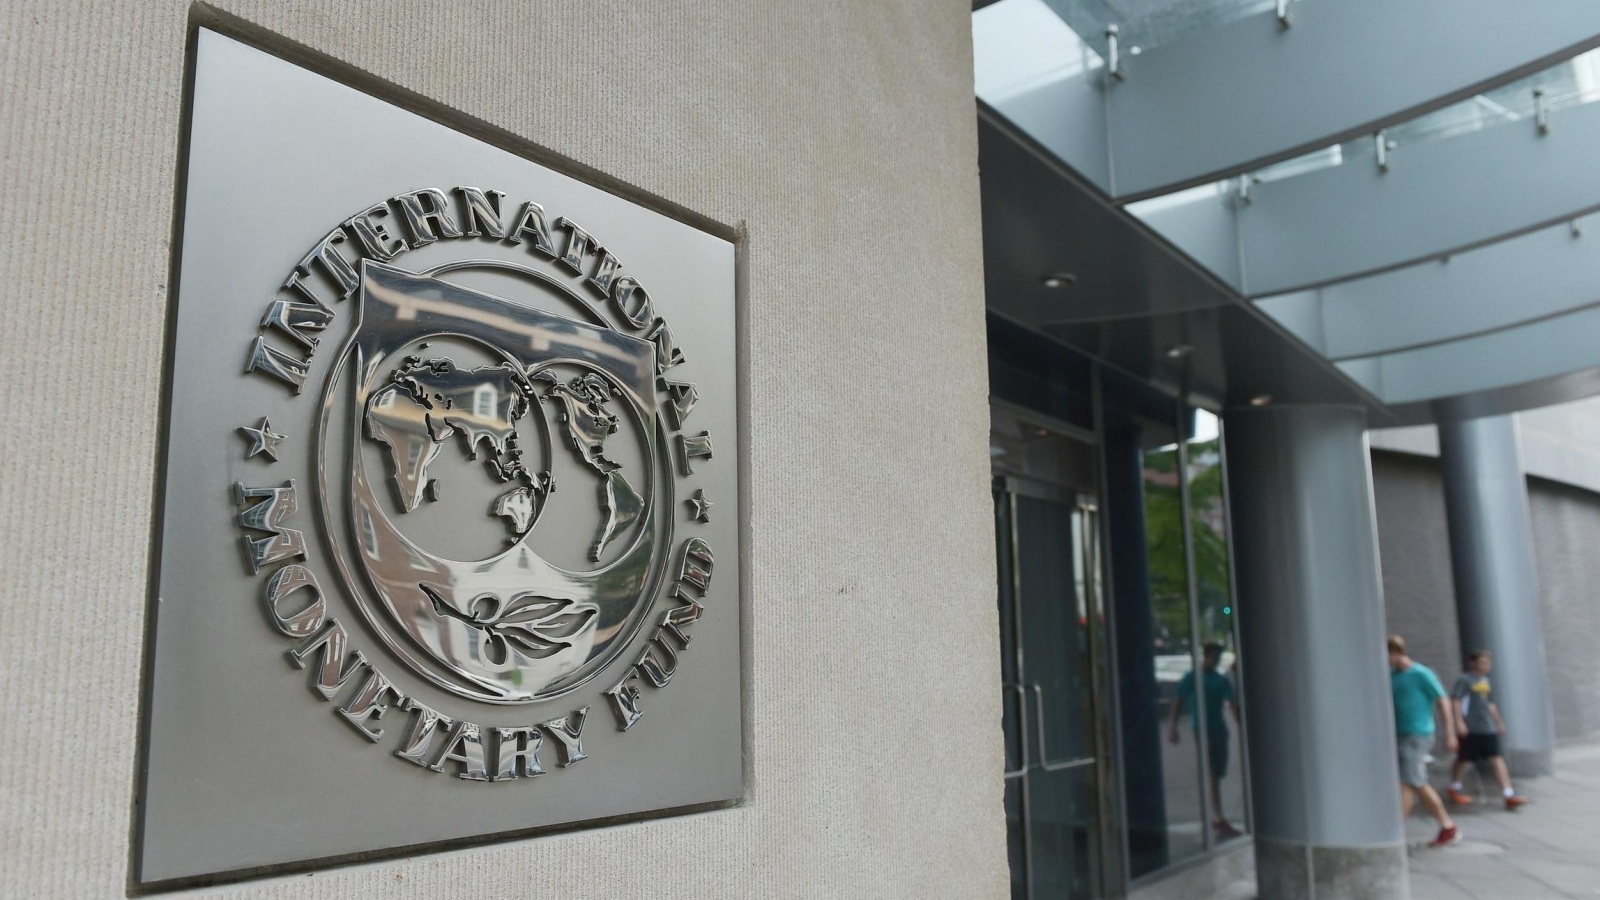 خبراء يعتقدون بأن التخلي عن الدولار يستلزم تغيير سياسات المؤسسات المالية الدولية ومنها صندوق النقد (غيتي)